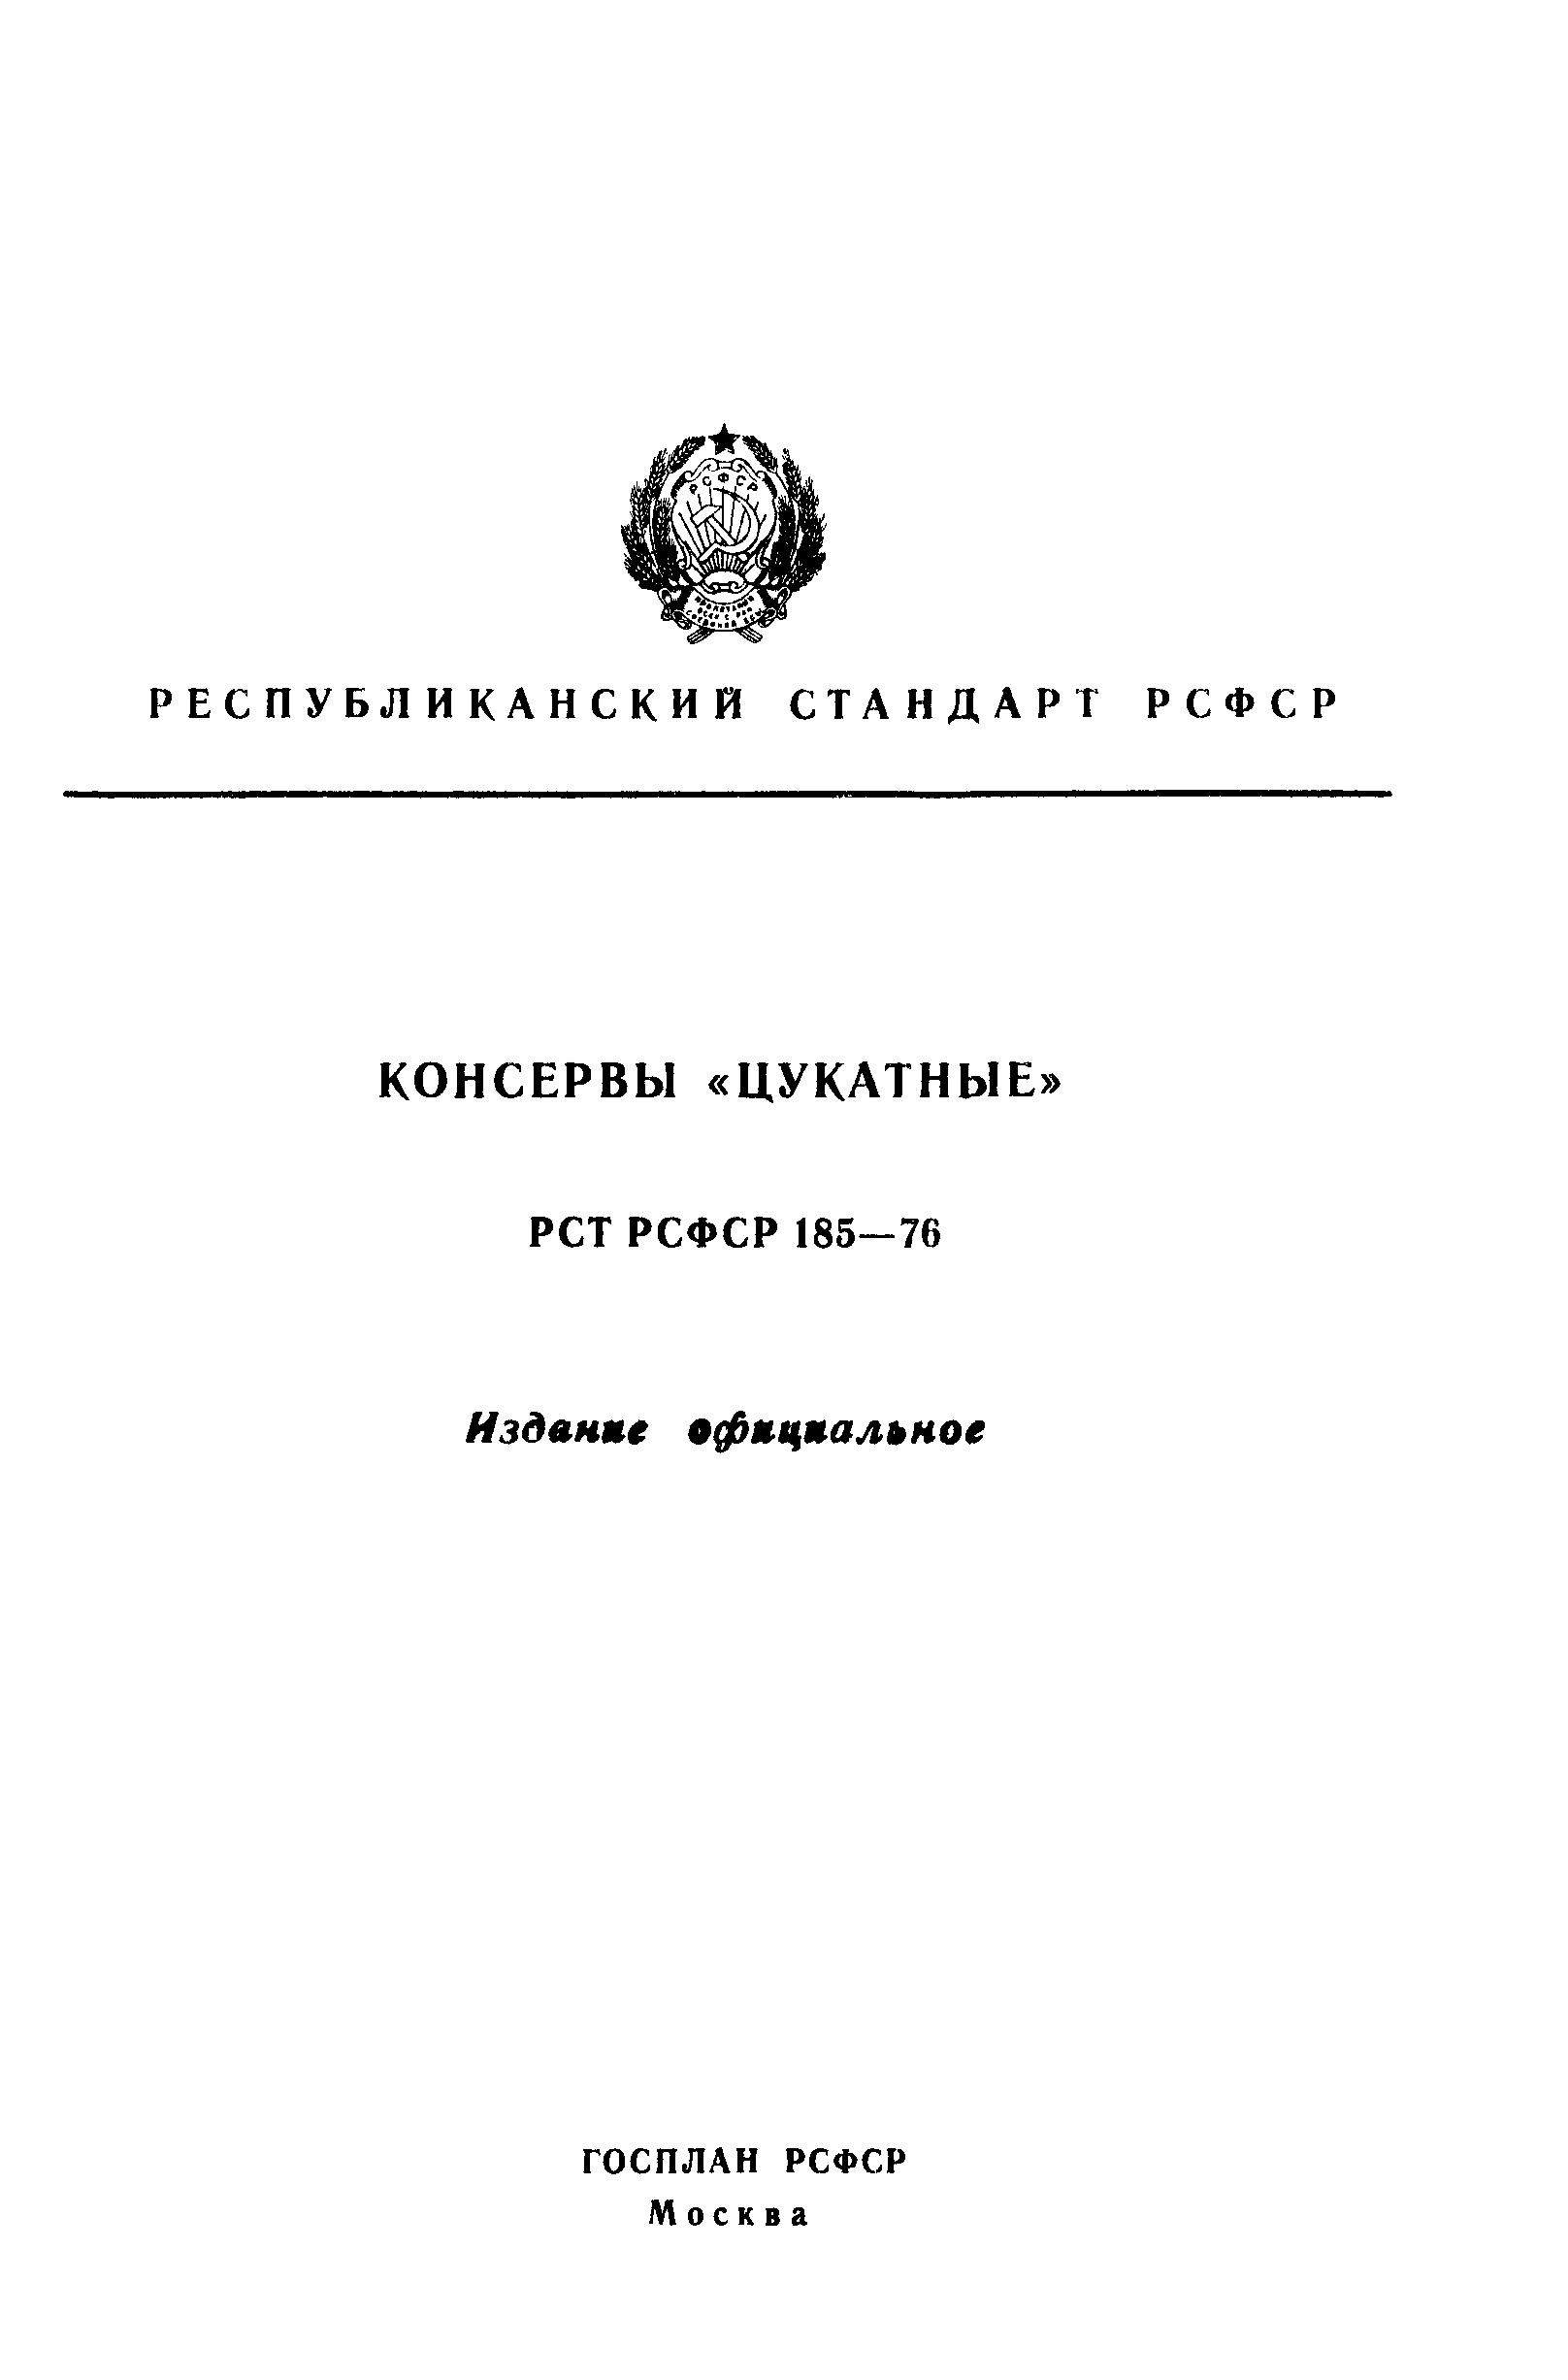 РСТ РСФСР 185-76